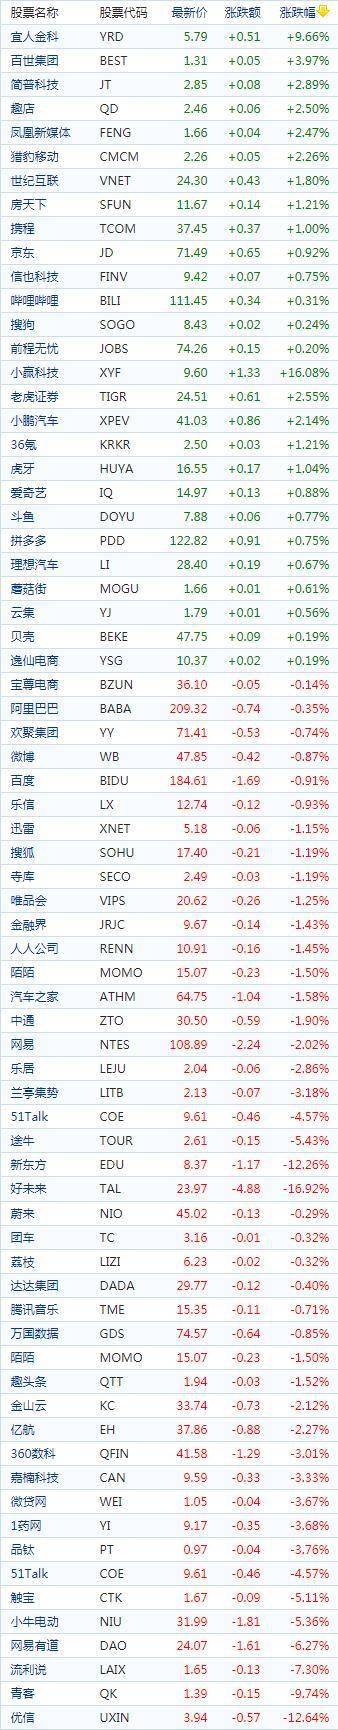 中国概念股周三收盘涨跌互现 在线教育及WSB概念股下挫